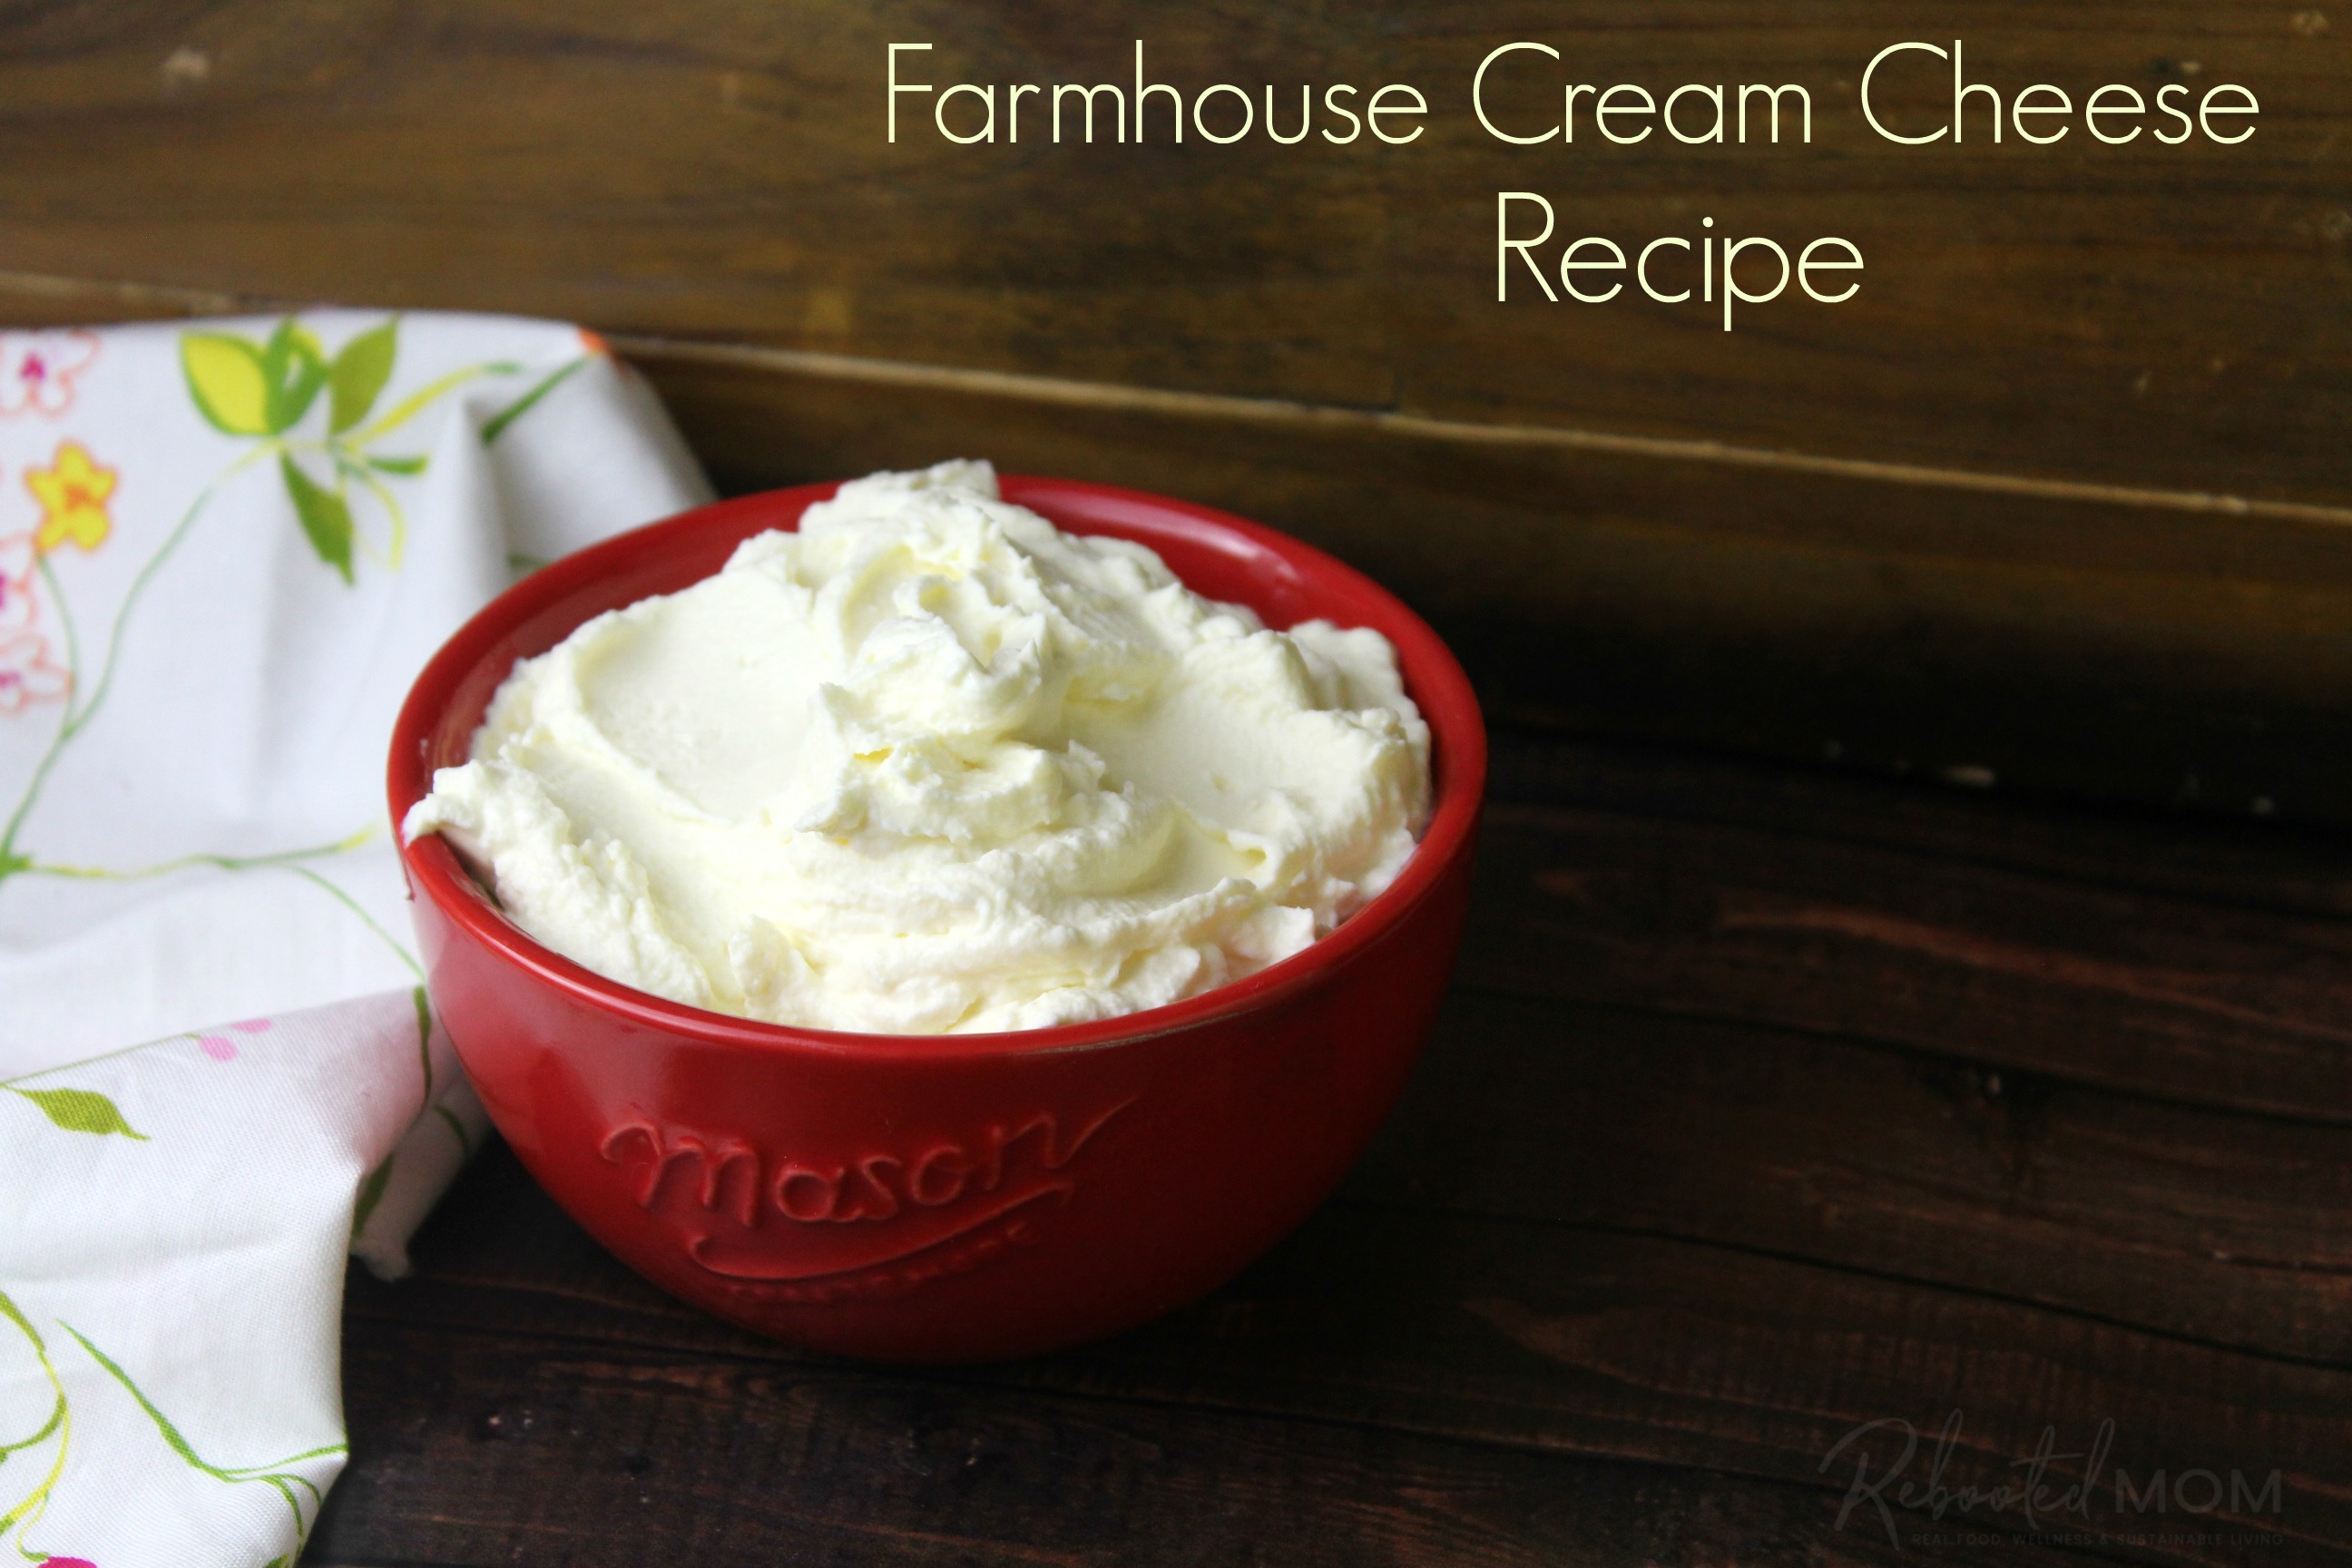 Farmhouse Cream Cheese Recipe